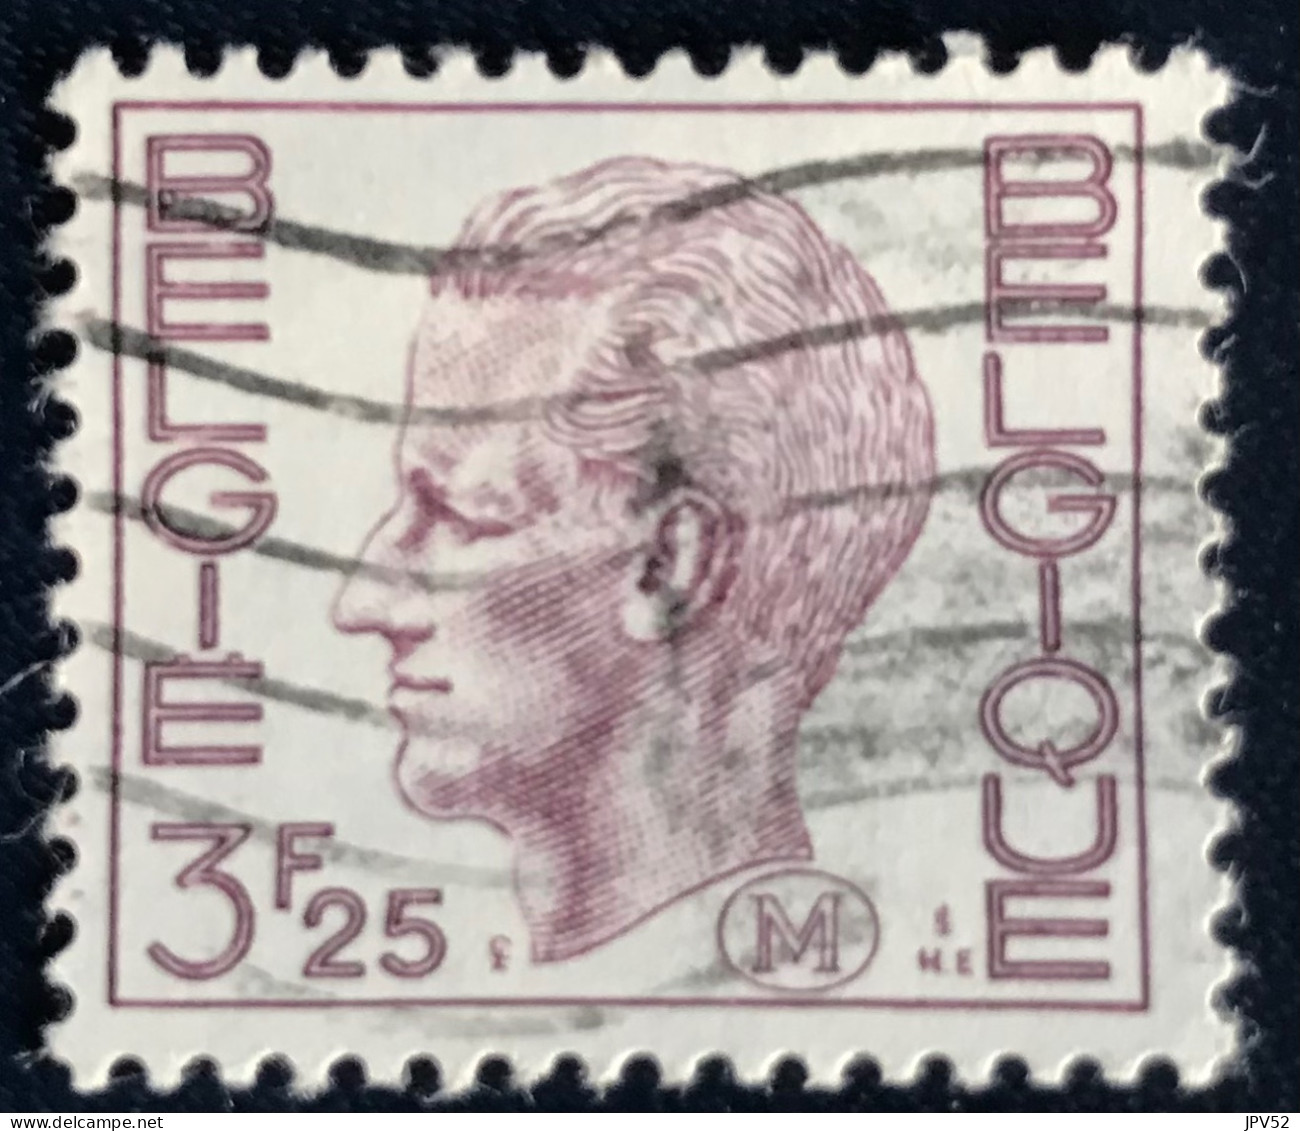 België - Belgique - C18/40 - 1975 - (°)used - Michel 5 - Militair - Koning Boudewijn - Stamps [M]